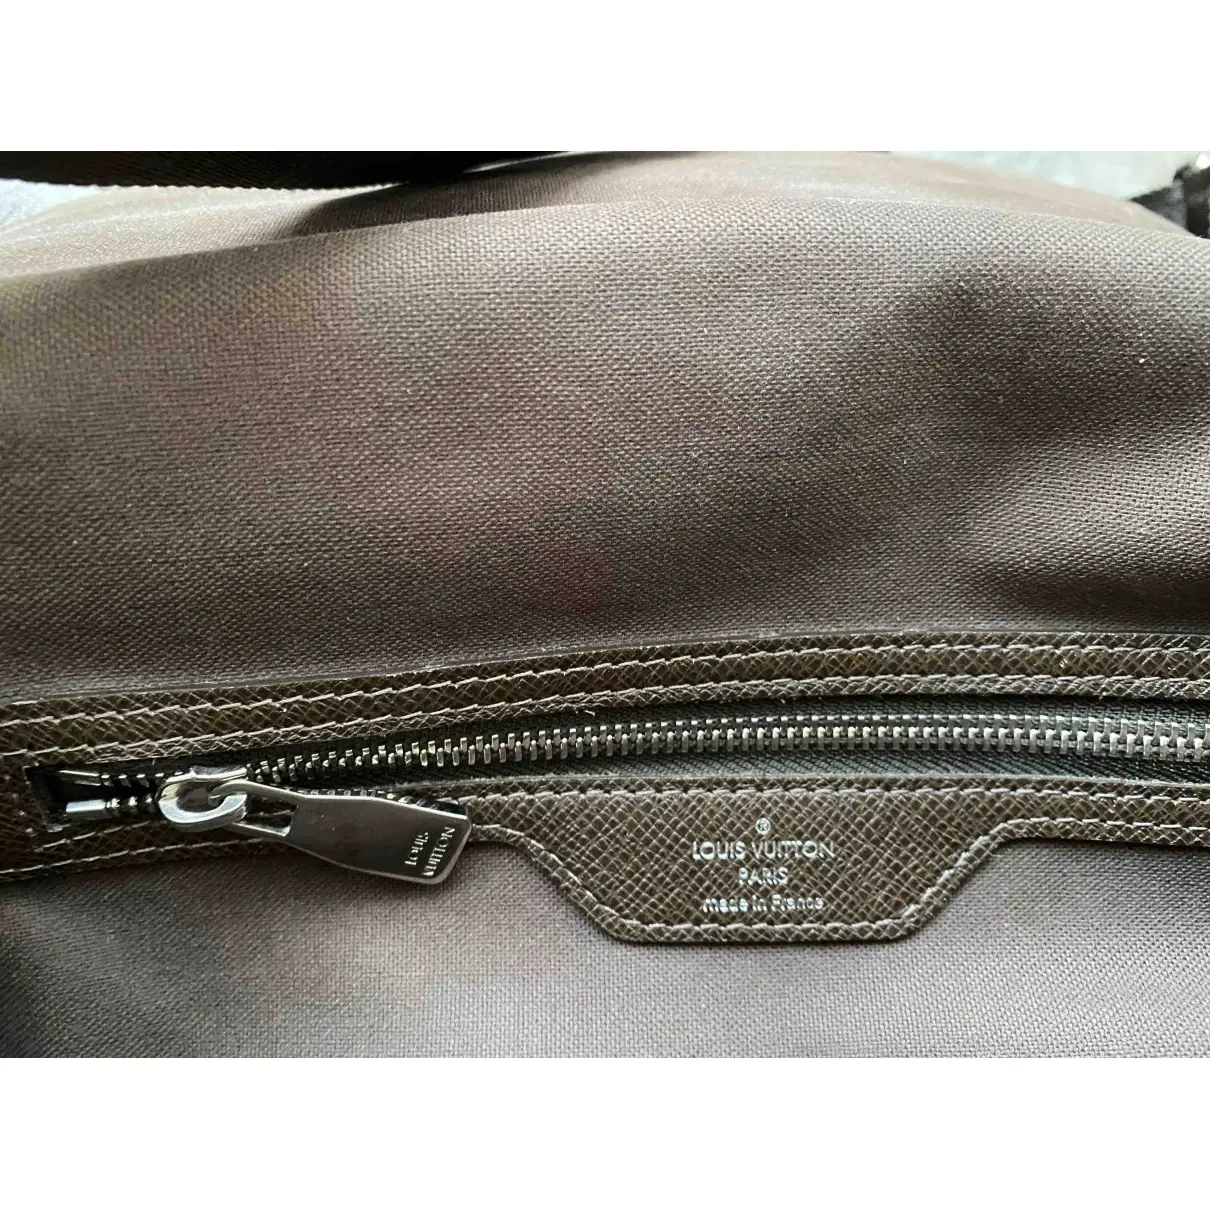 Roman leather satchel Louis Vuitton